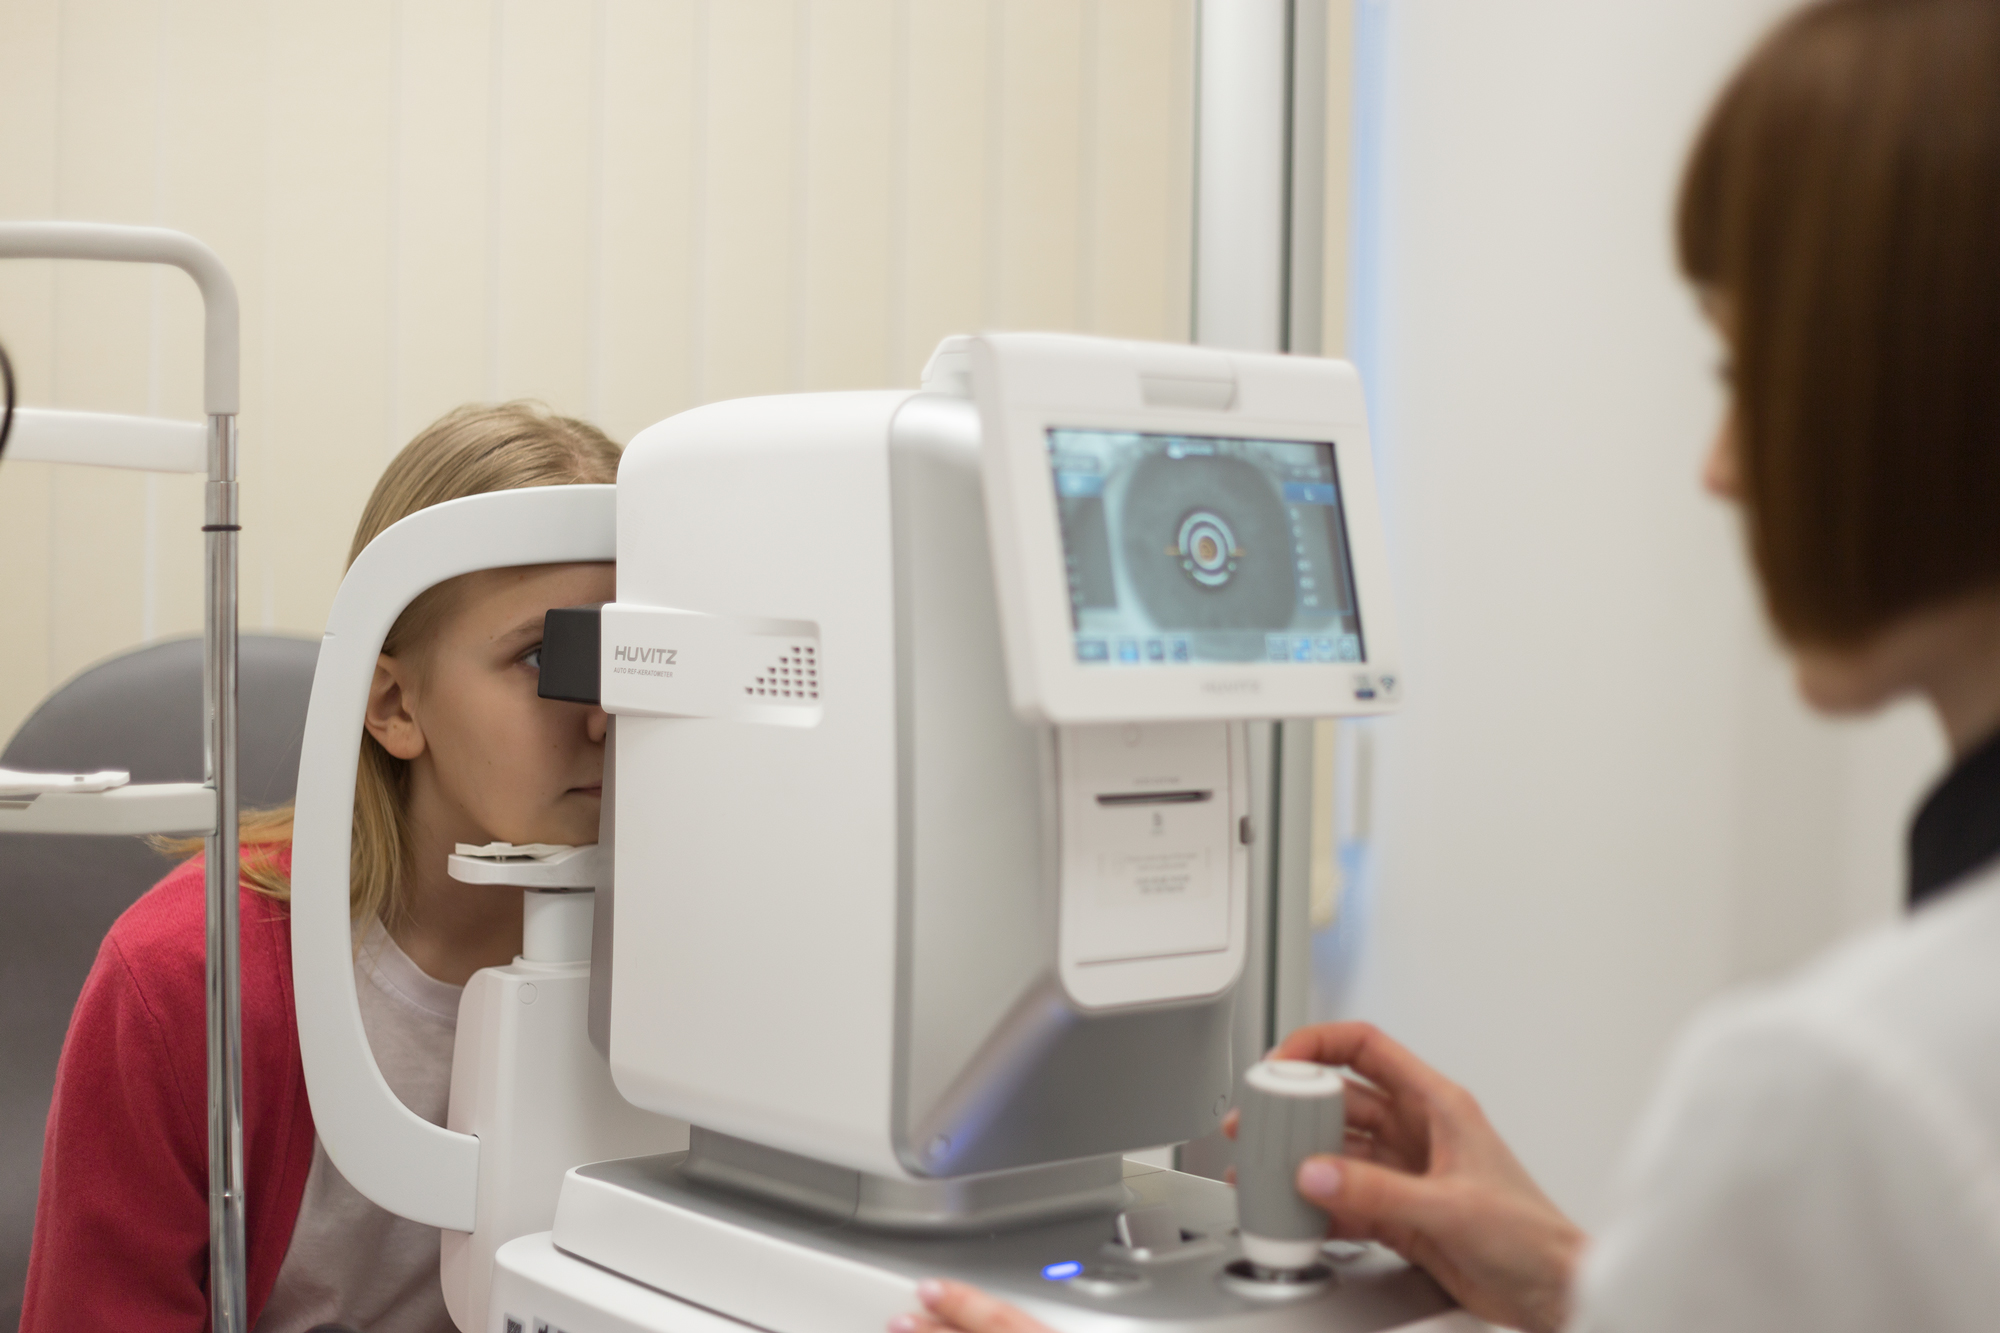 В Оренбурге стартует программа по бесплатной проверке зрения